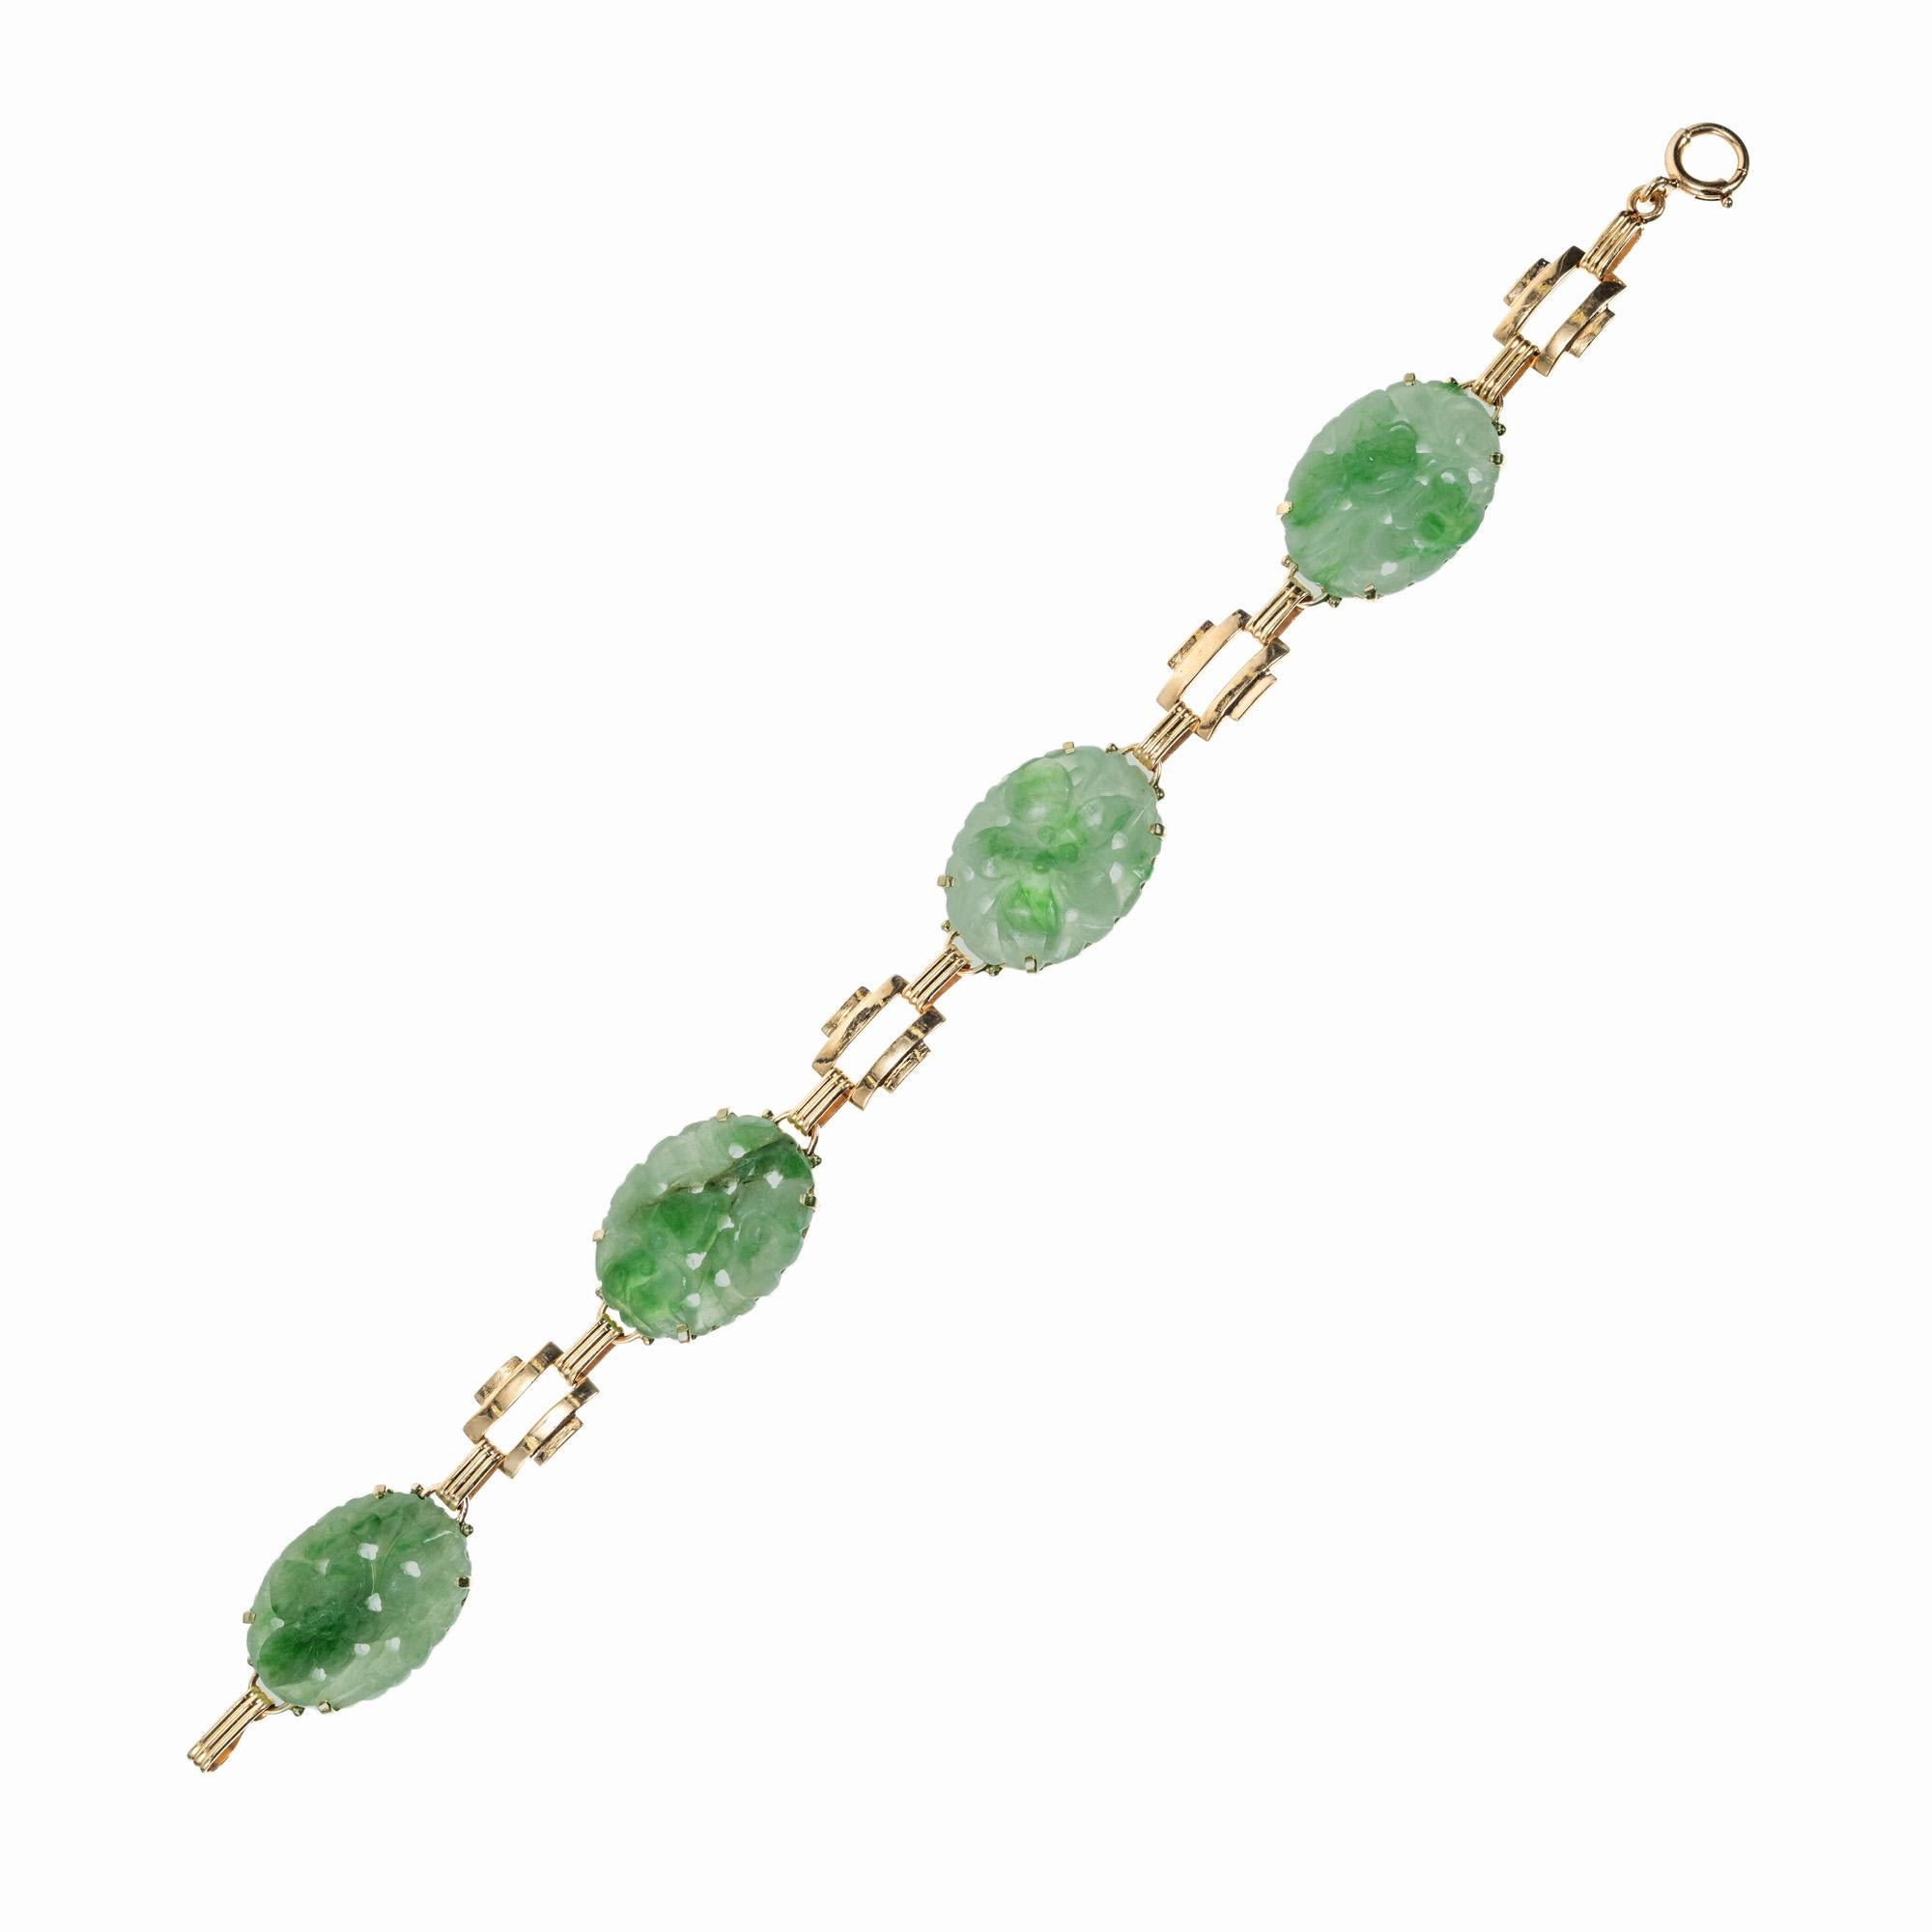 1940's Original Art Deco Retro Jadeit Jade Armband. GIA zertifiziert 4 ovale geschnitzt bunten Blumen-Design Jade 14k Gelbgold Armband. circa 1940's. Zertifizierte natürliche, unbehandelte Jade.  7 Zoll Länge. 

Natürliche unbehandelte Jadeit Jade